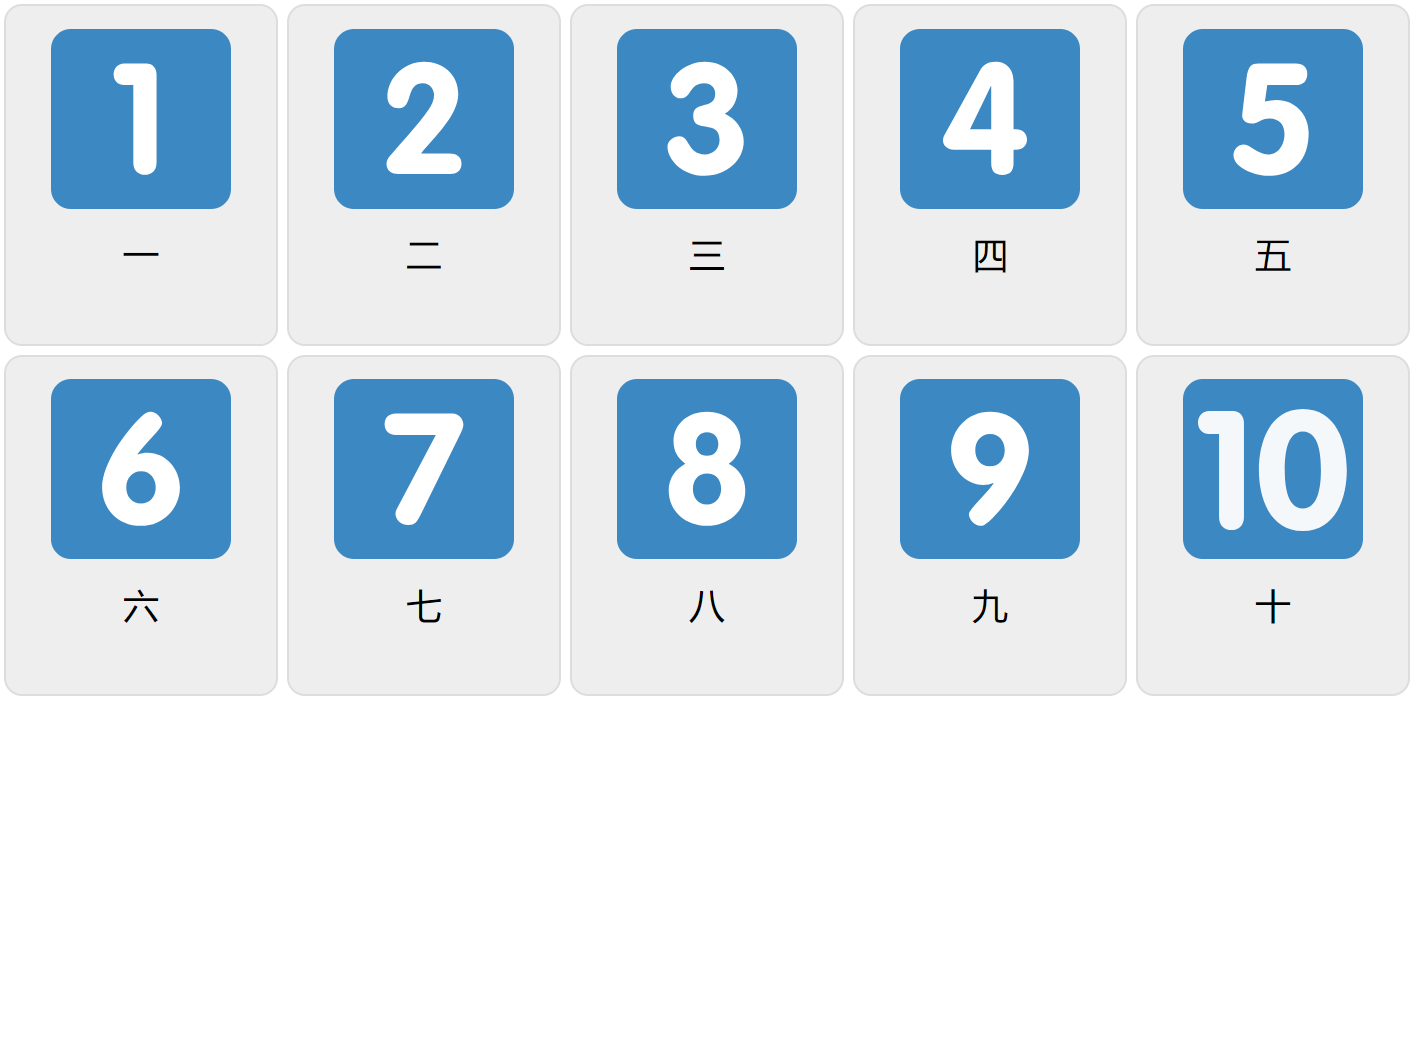 Numbers 1-10 in Mandarin